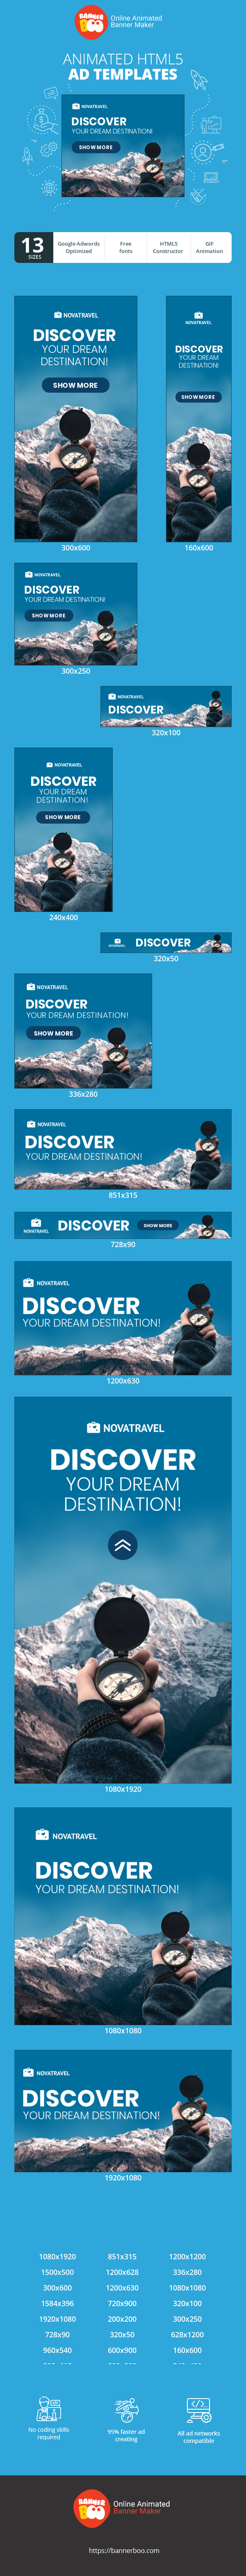 Szablon reklamy banerowej — Discover Your Dream Destination! — Travelling